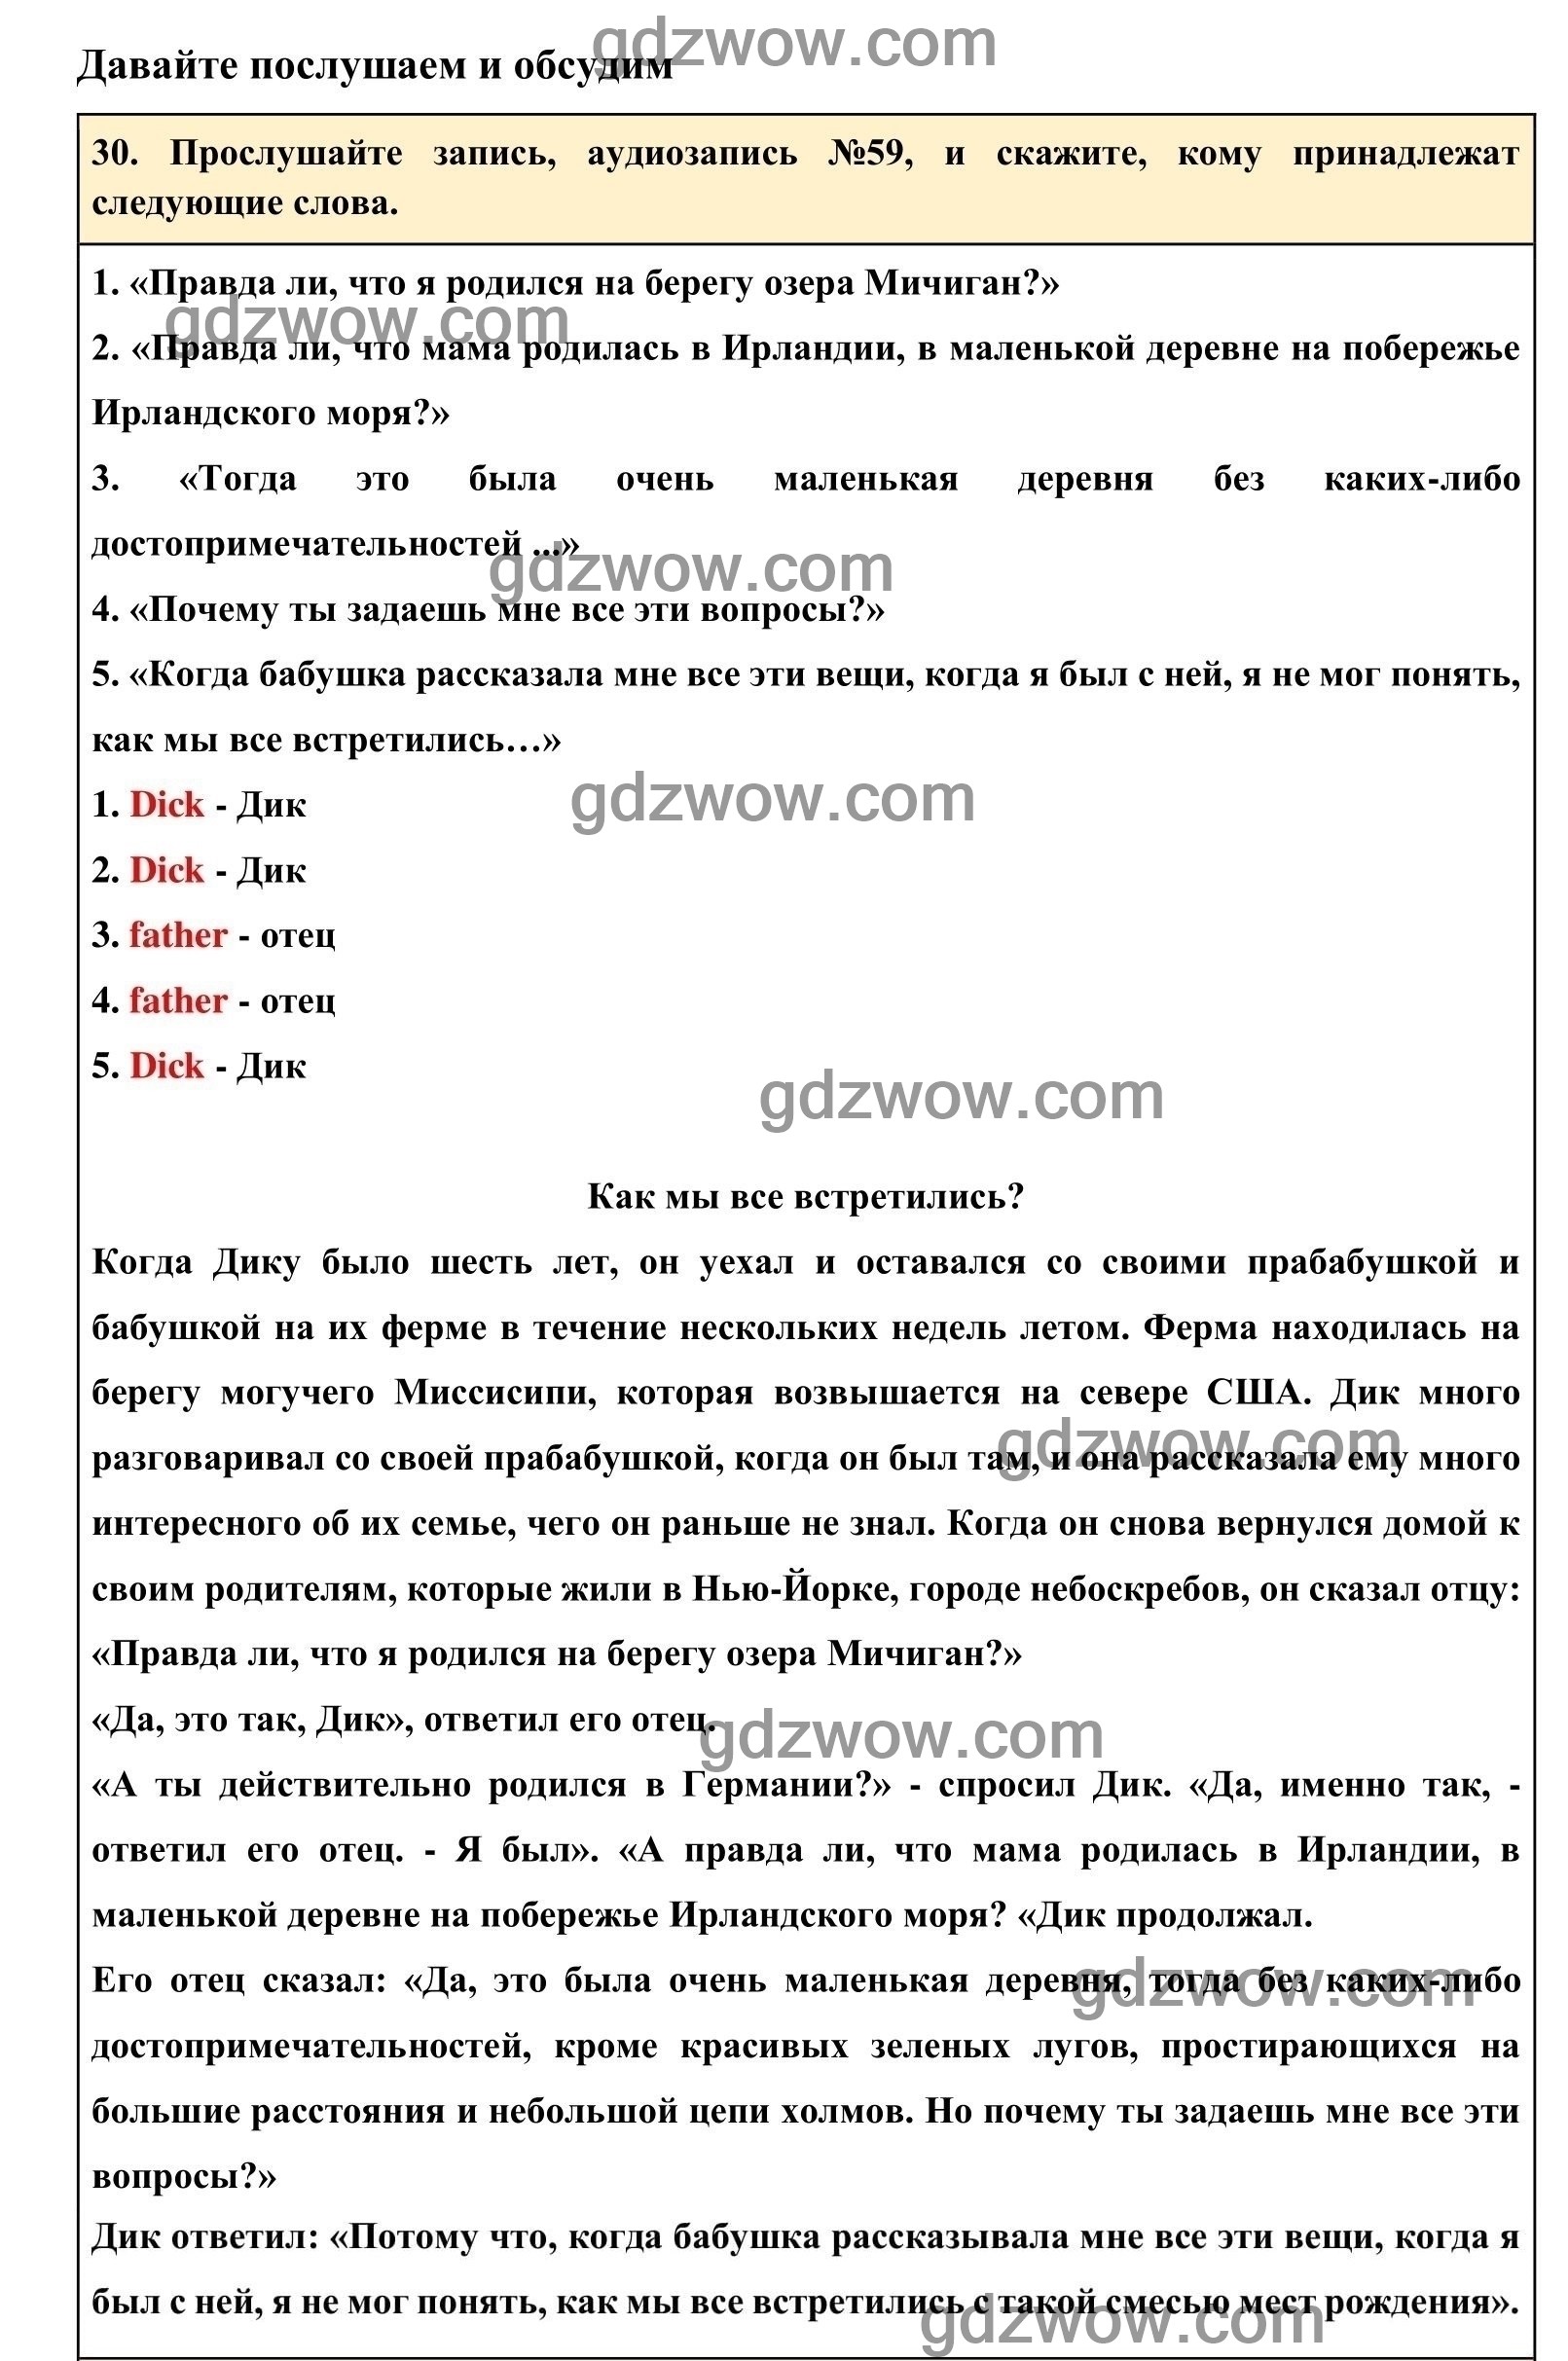 Номер 30 - ГДЗ по Английскому языку для 6 класса Учебник Афанасьева, Михеева. Unit 16. (решебник) - GDZwow